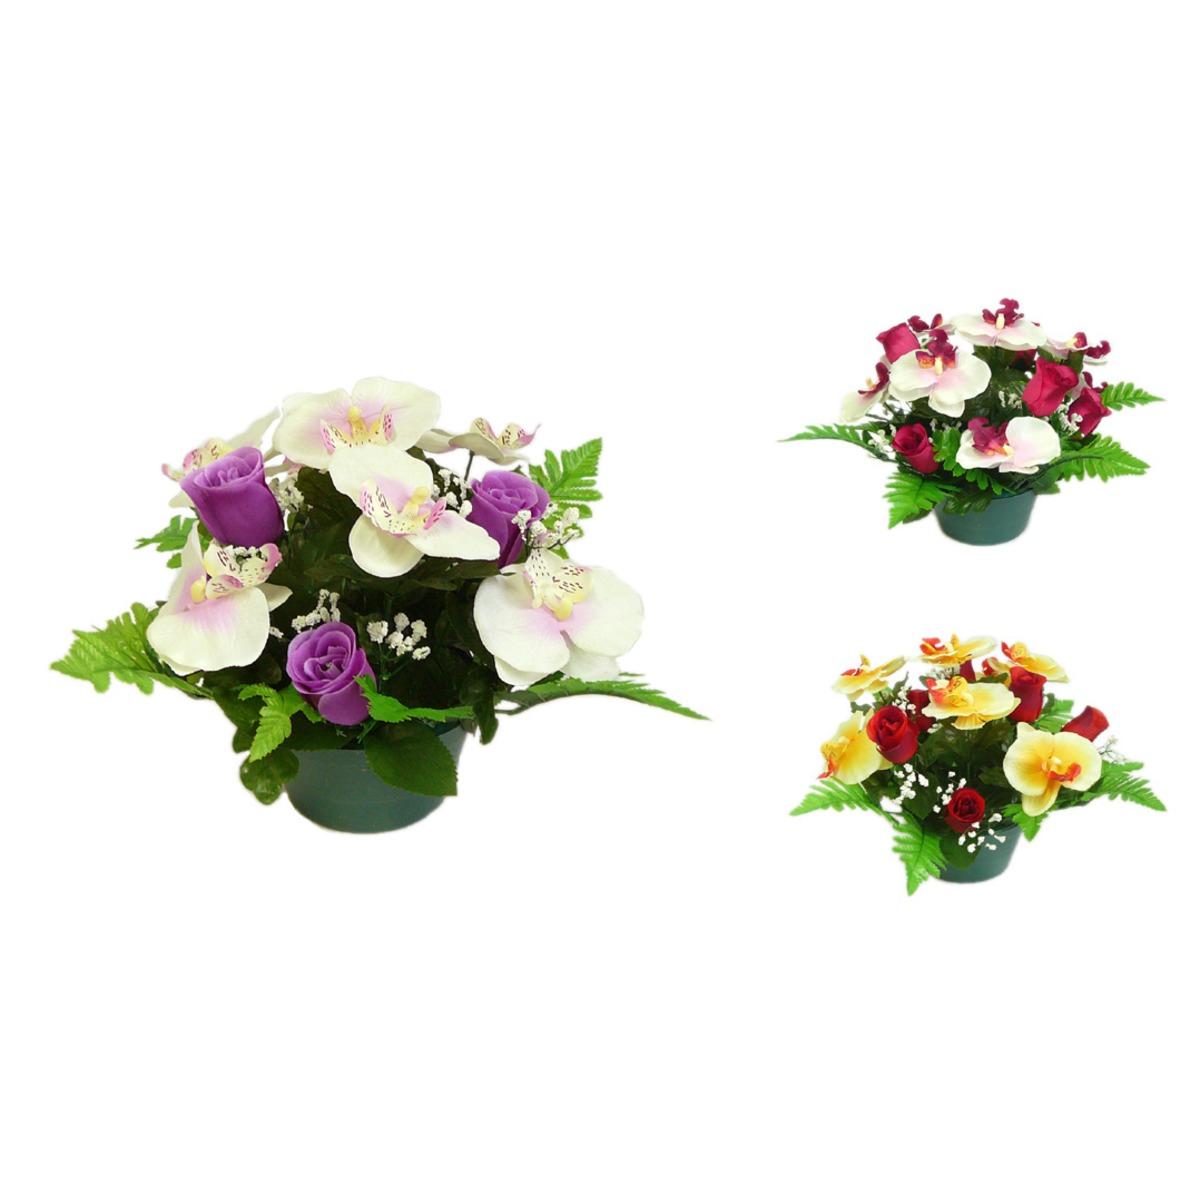 Coupe boutons de roses + orchidées - 14 x H 28 cm - Différents modèles